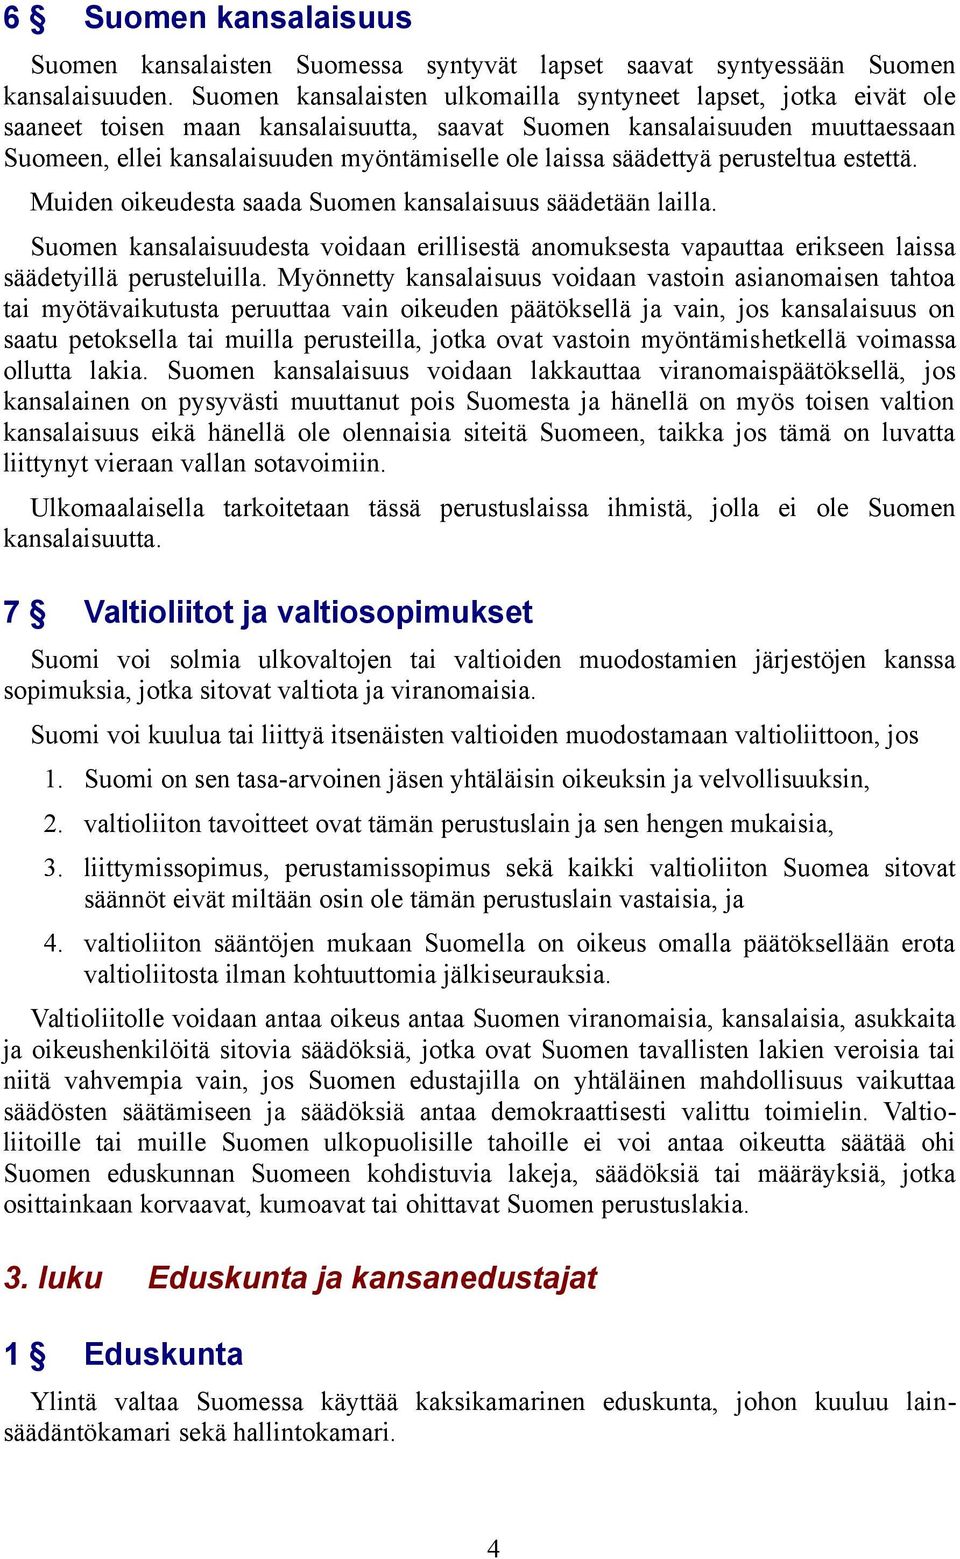 säädettyä perusteltua estettä. Muiden oikeudesta saada Suomen kansalaisuus säädetään lailla.